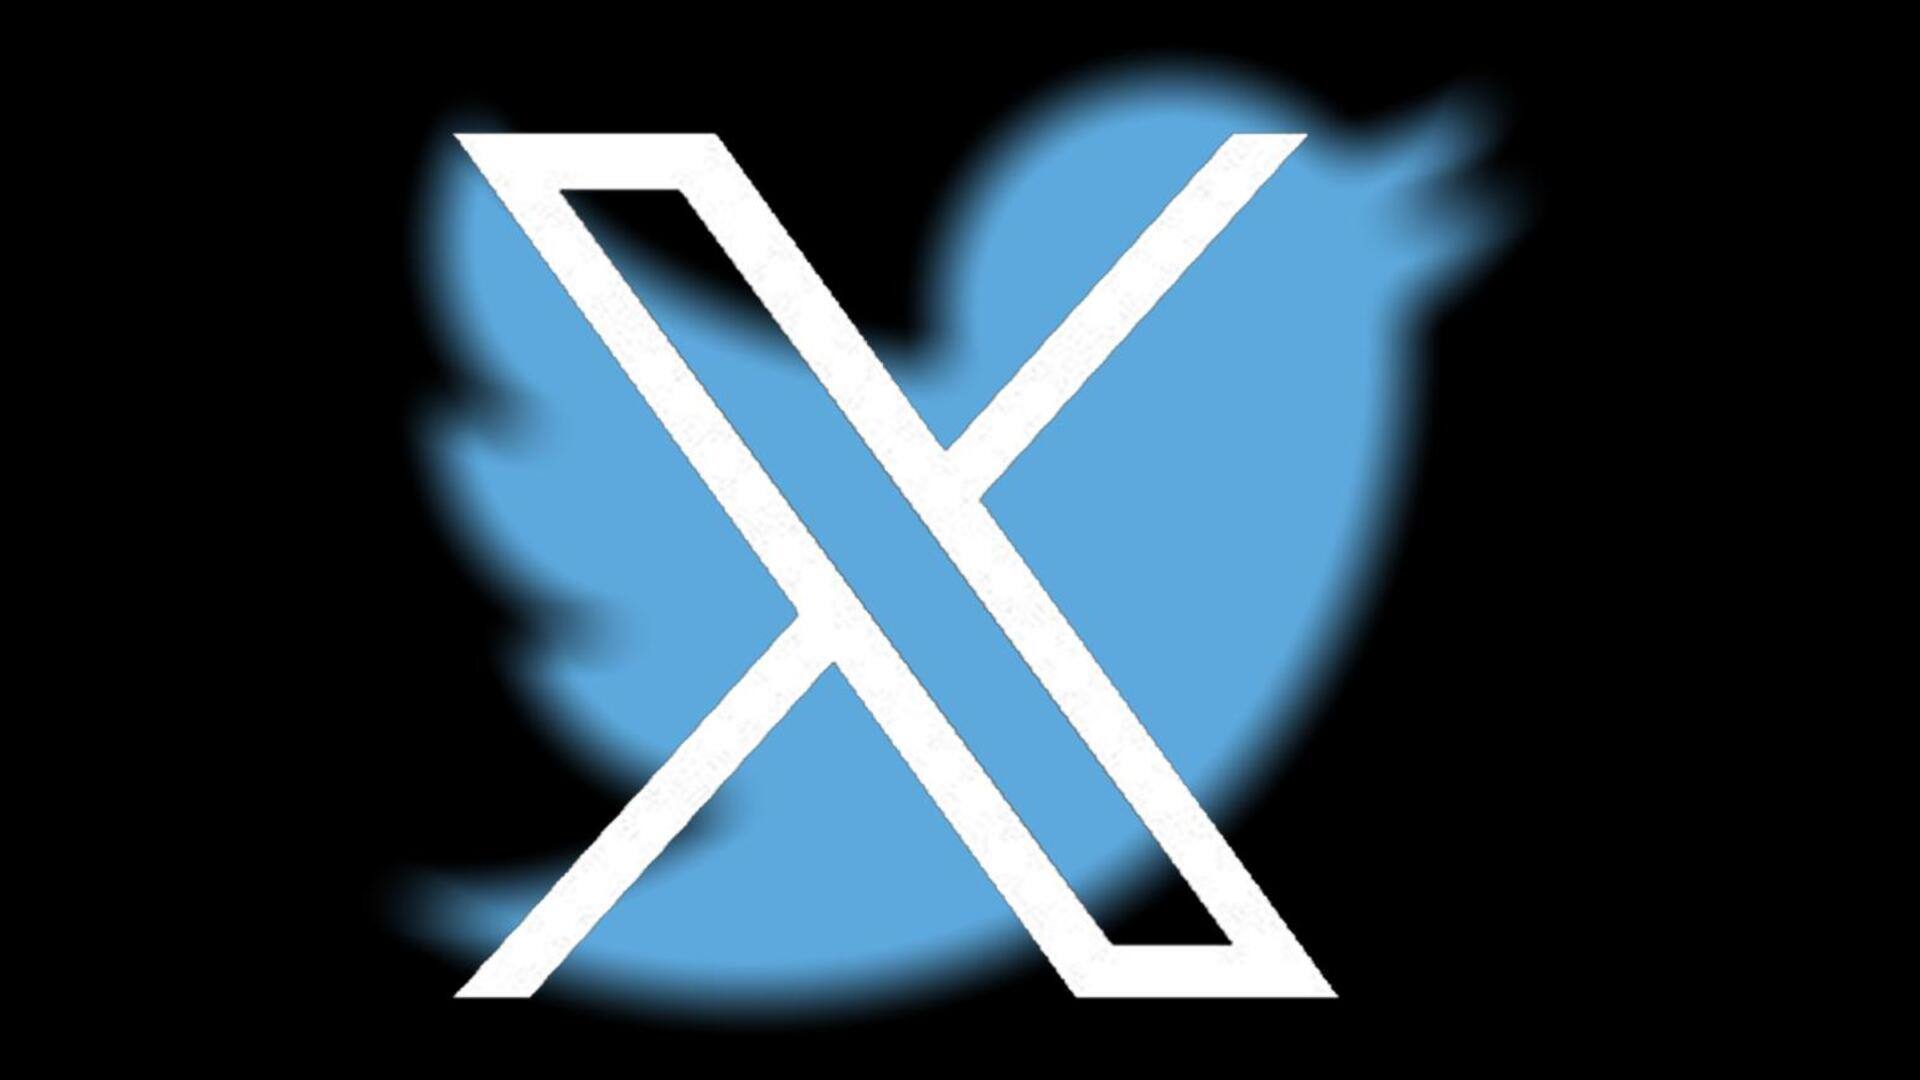 ट्विटर (X) प्लेटफॉर्म पर अब विज्ञापनदाताओं को नहीं प्रमोट करने देगी अपने अकॉउंट्स- रिपोर्ट